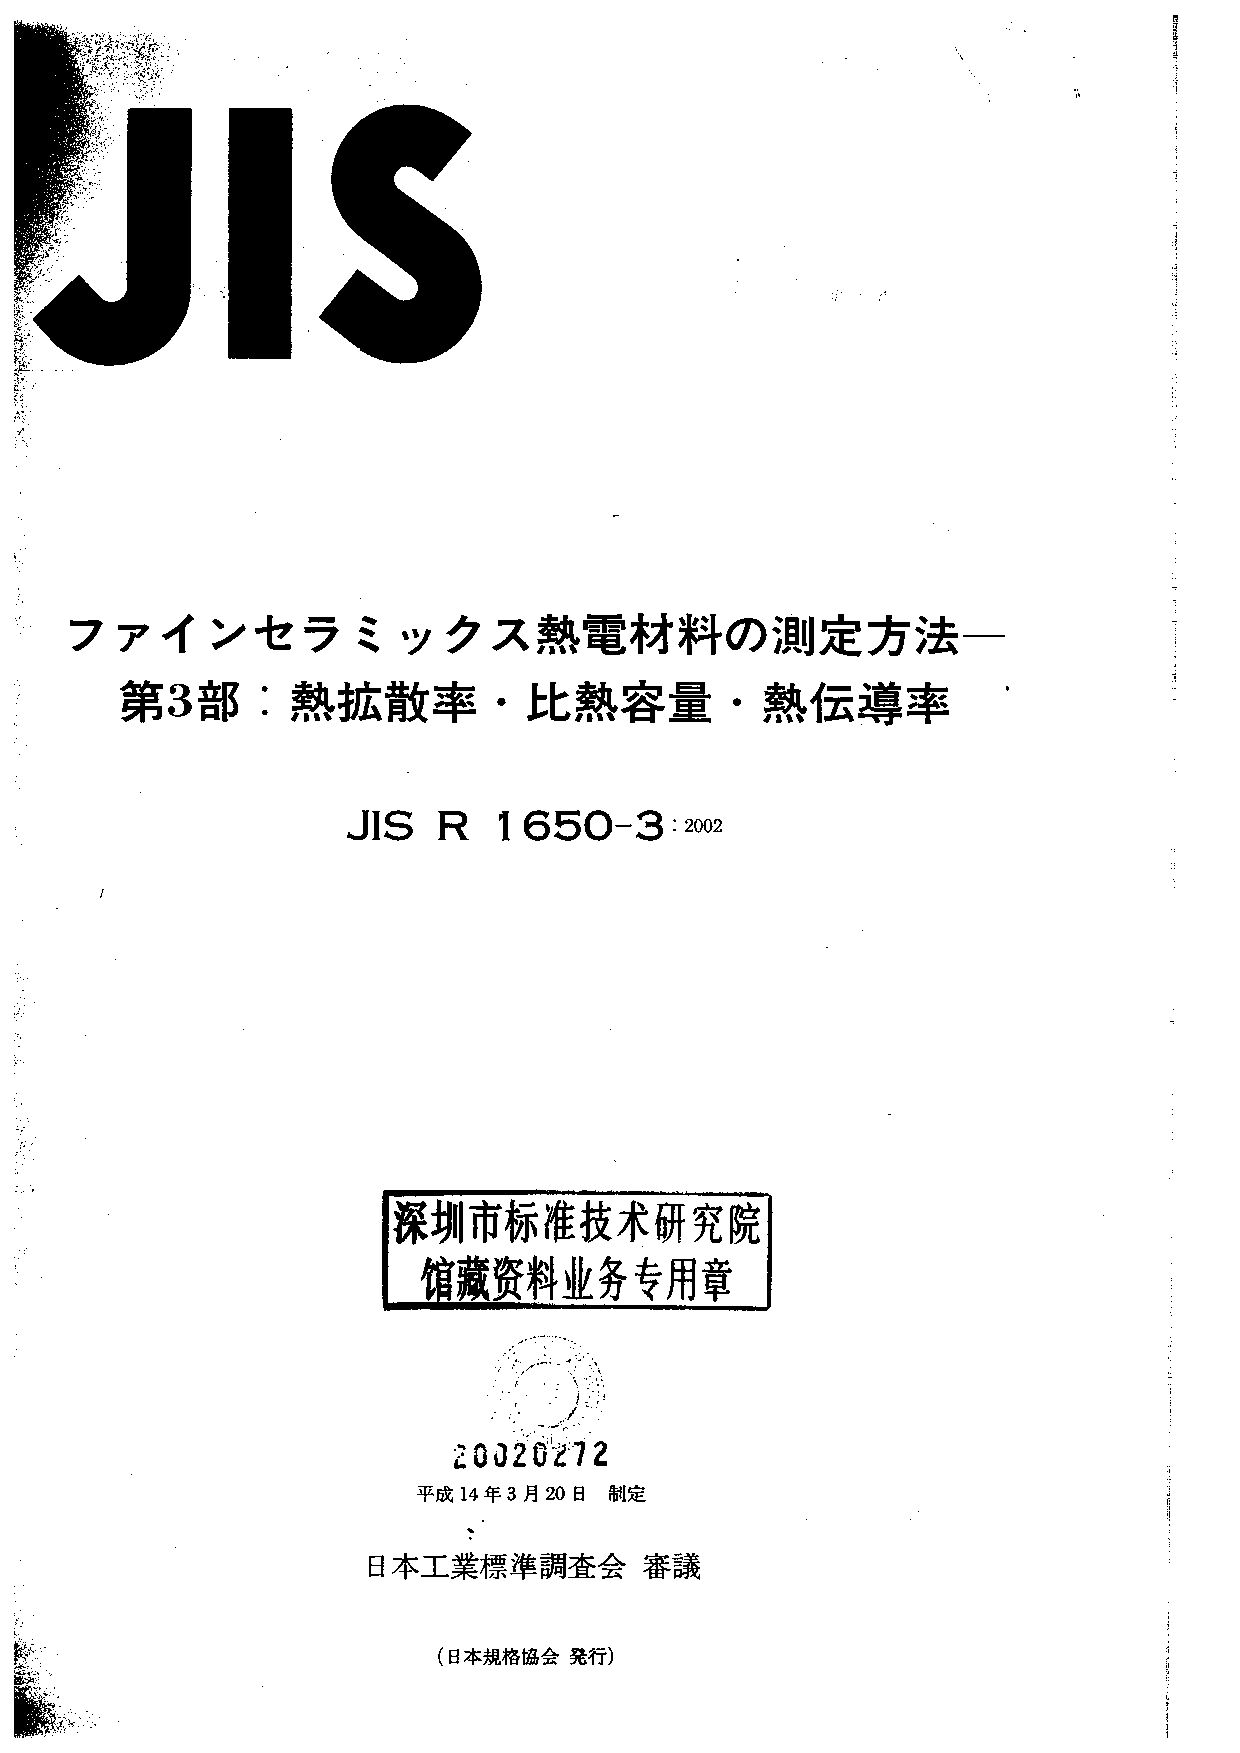 JIS R 1650-3:2002